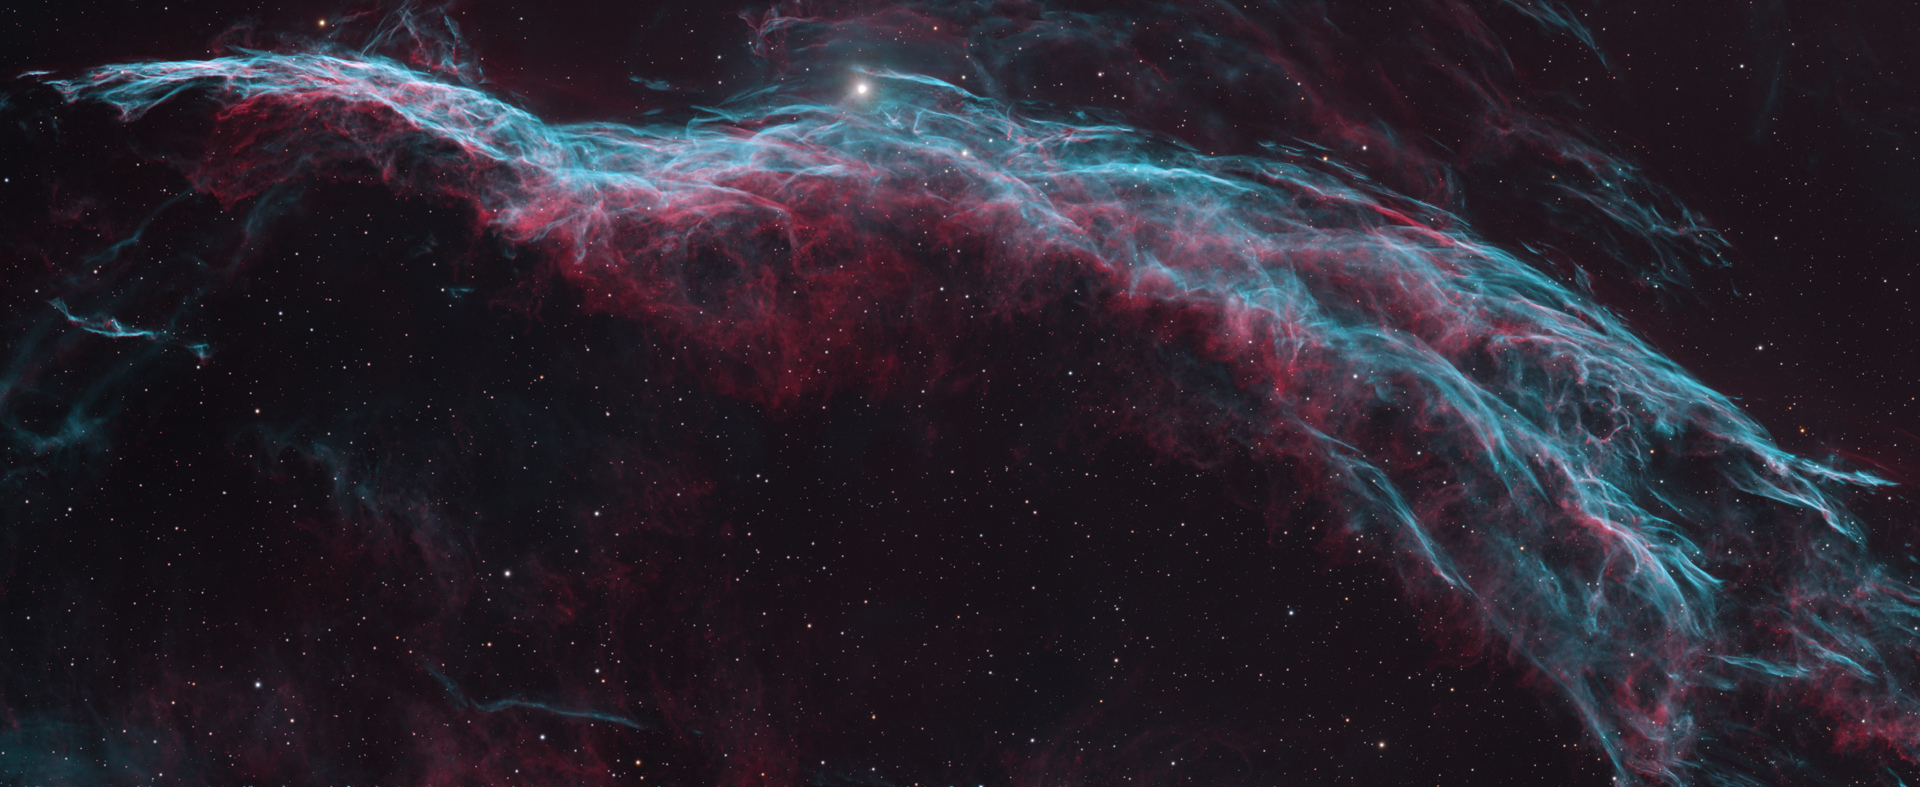 NGC6960_2023_Cut_1920x787.jpg.2d65f437d5aa499bd49513f3dff02218.jpg